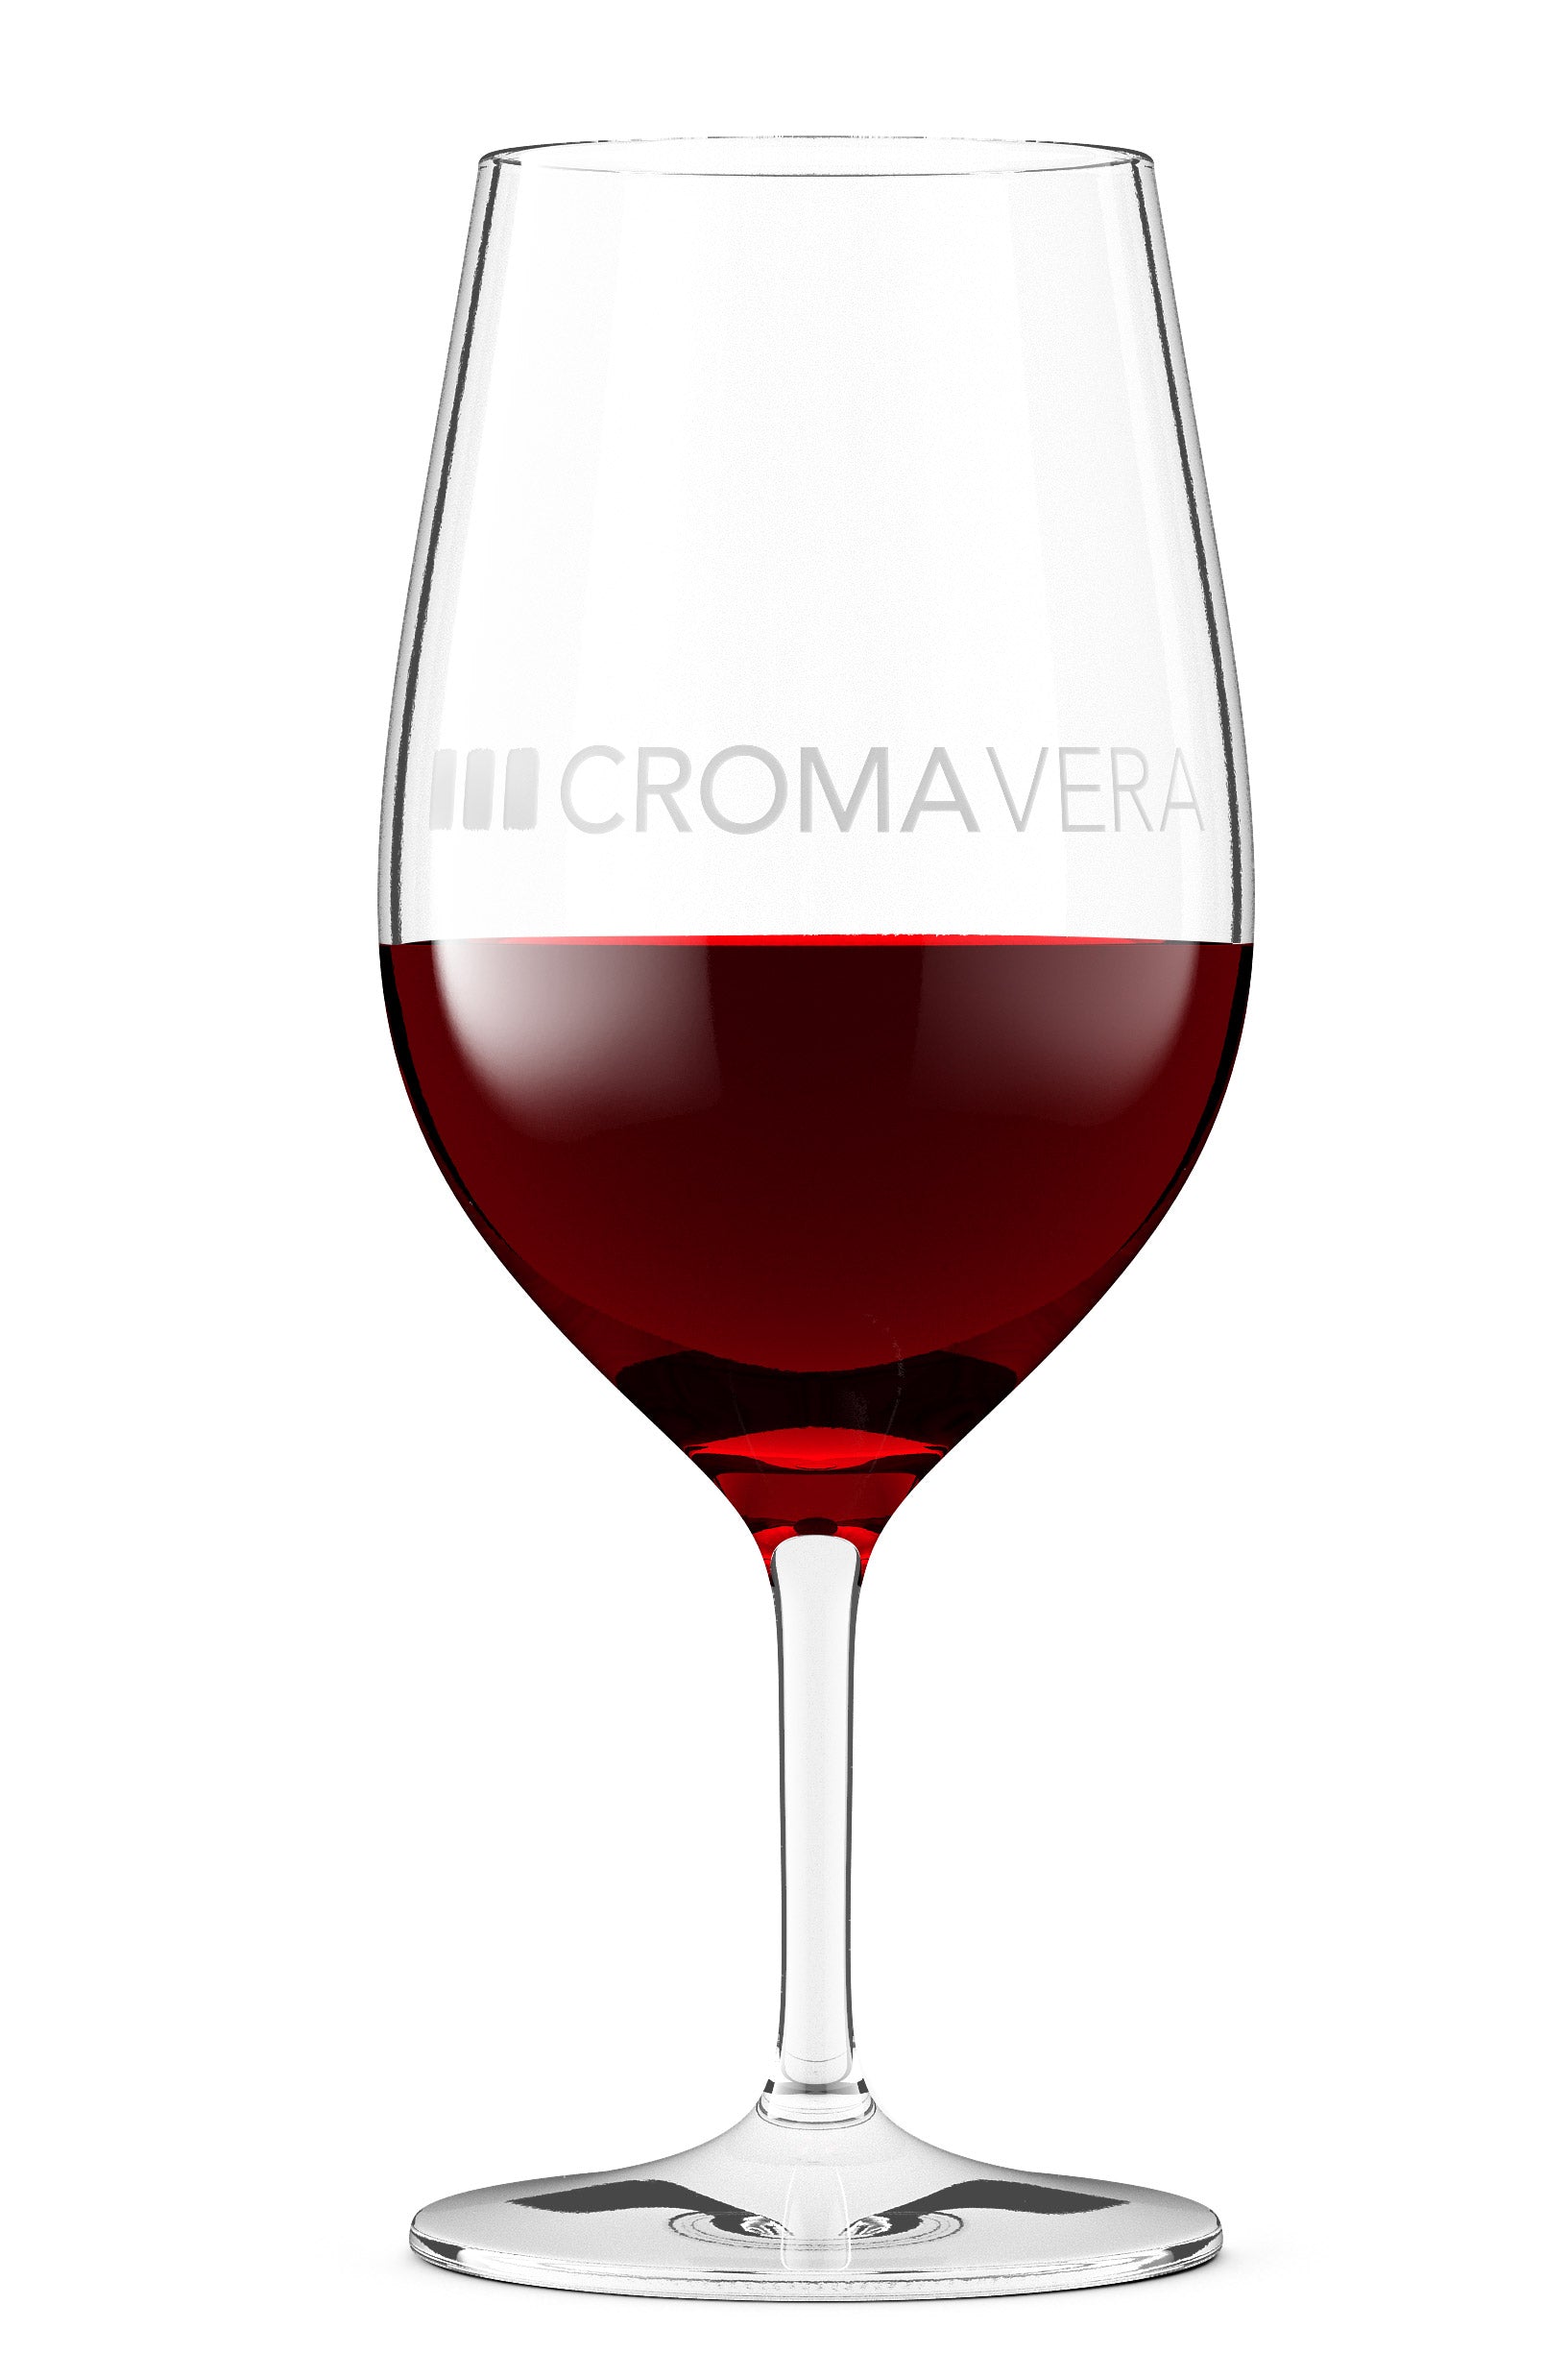 Croma Vera Carbonic Tempranillo Joven red wine in a wine glass